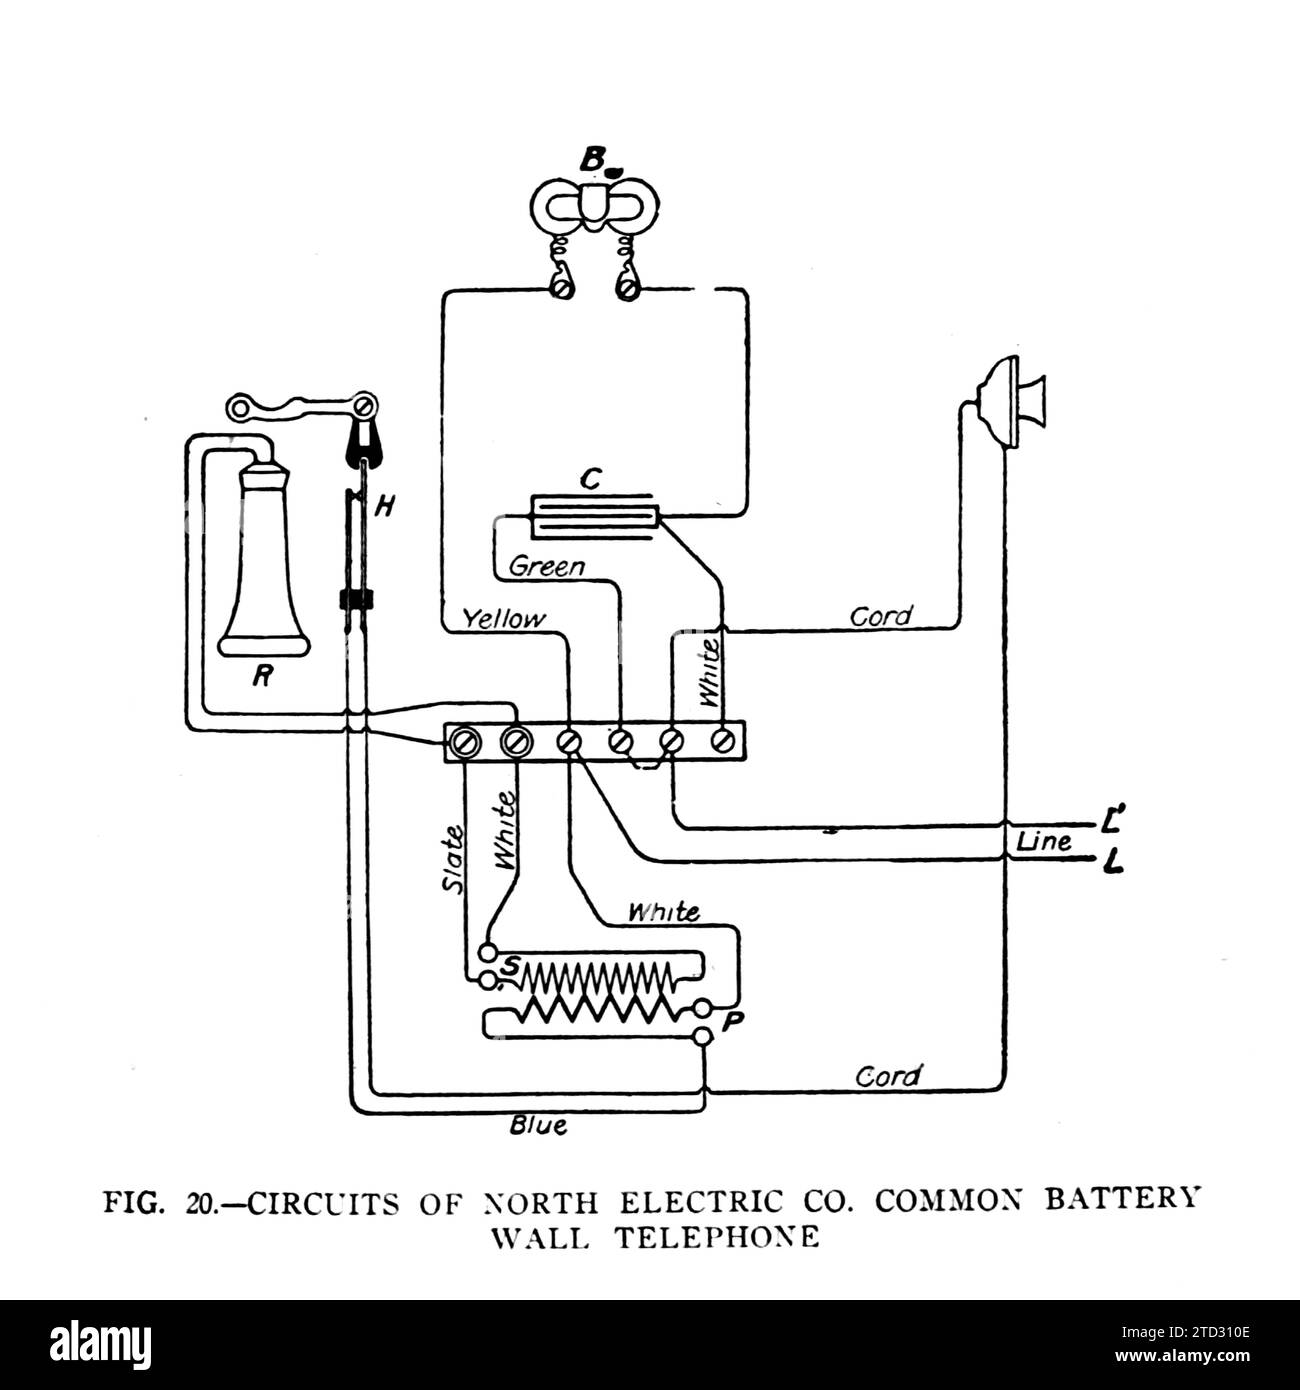 North Electric Co. Gemeinsame Wandtelefonschaltungen, Abbildung. Aus dem Handbuch des Military Signal Corps von James Andrew White, Veröffentlichungsdatum 1918. Stockfoto